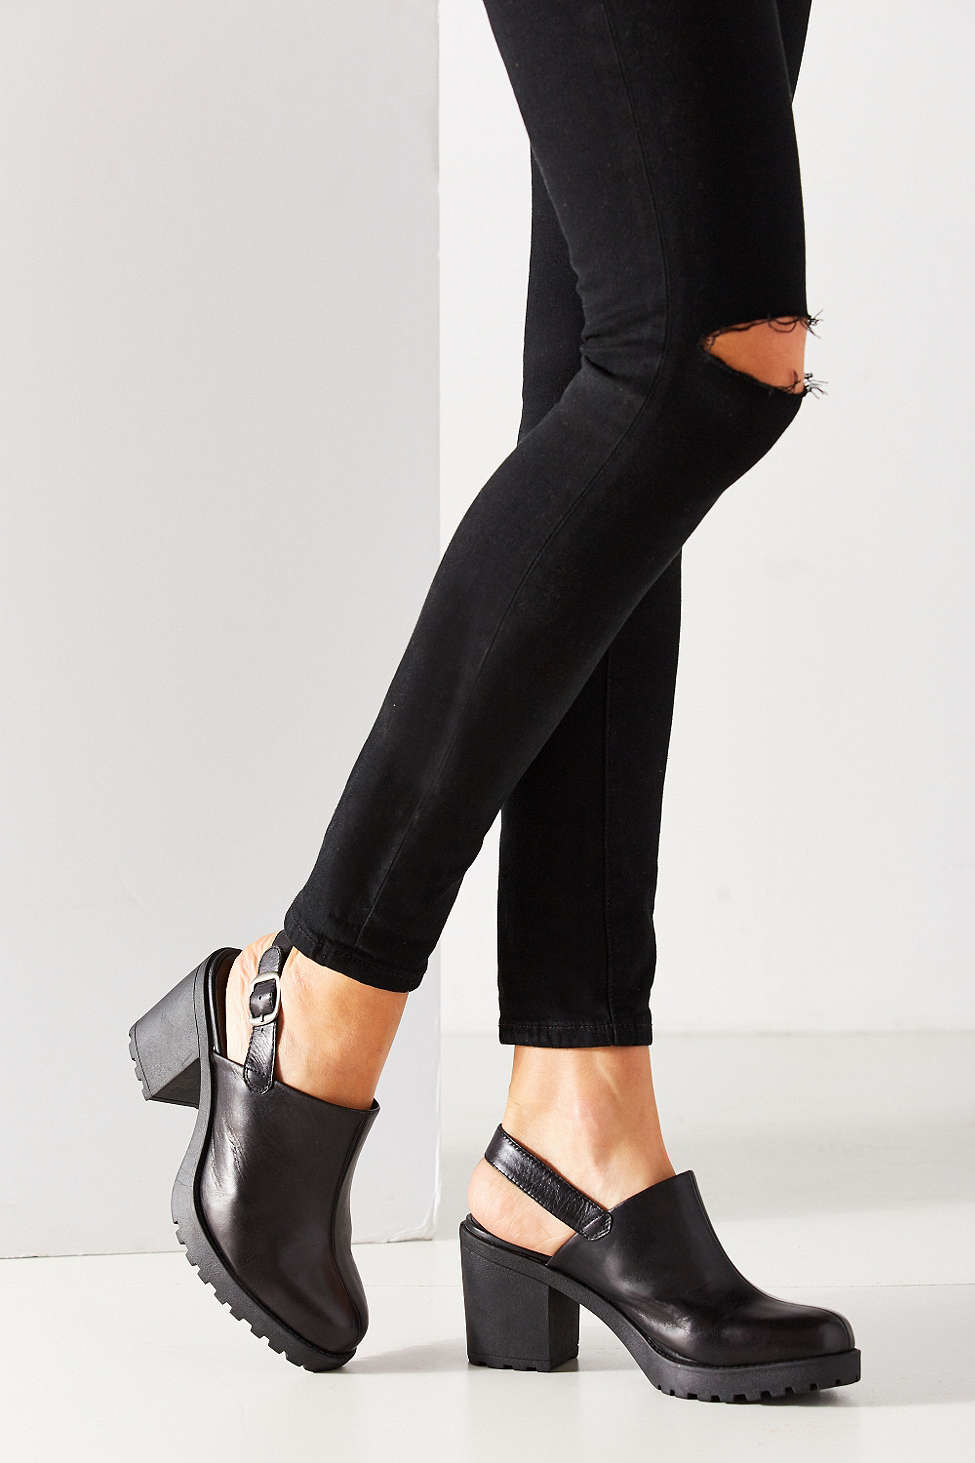 Vagabond Shoemakers Grace Slingback Mule Heel in Black | Lyst